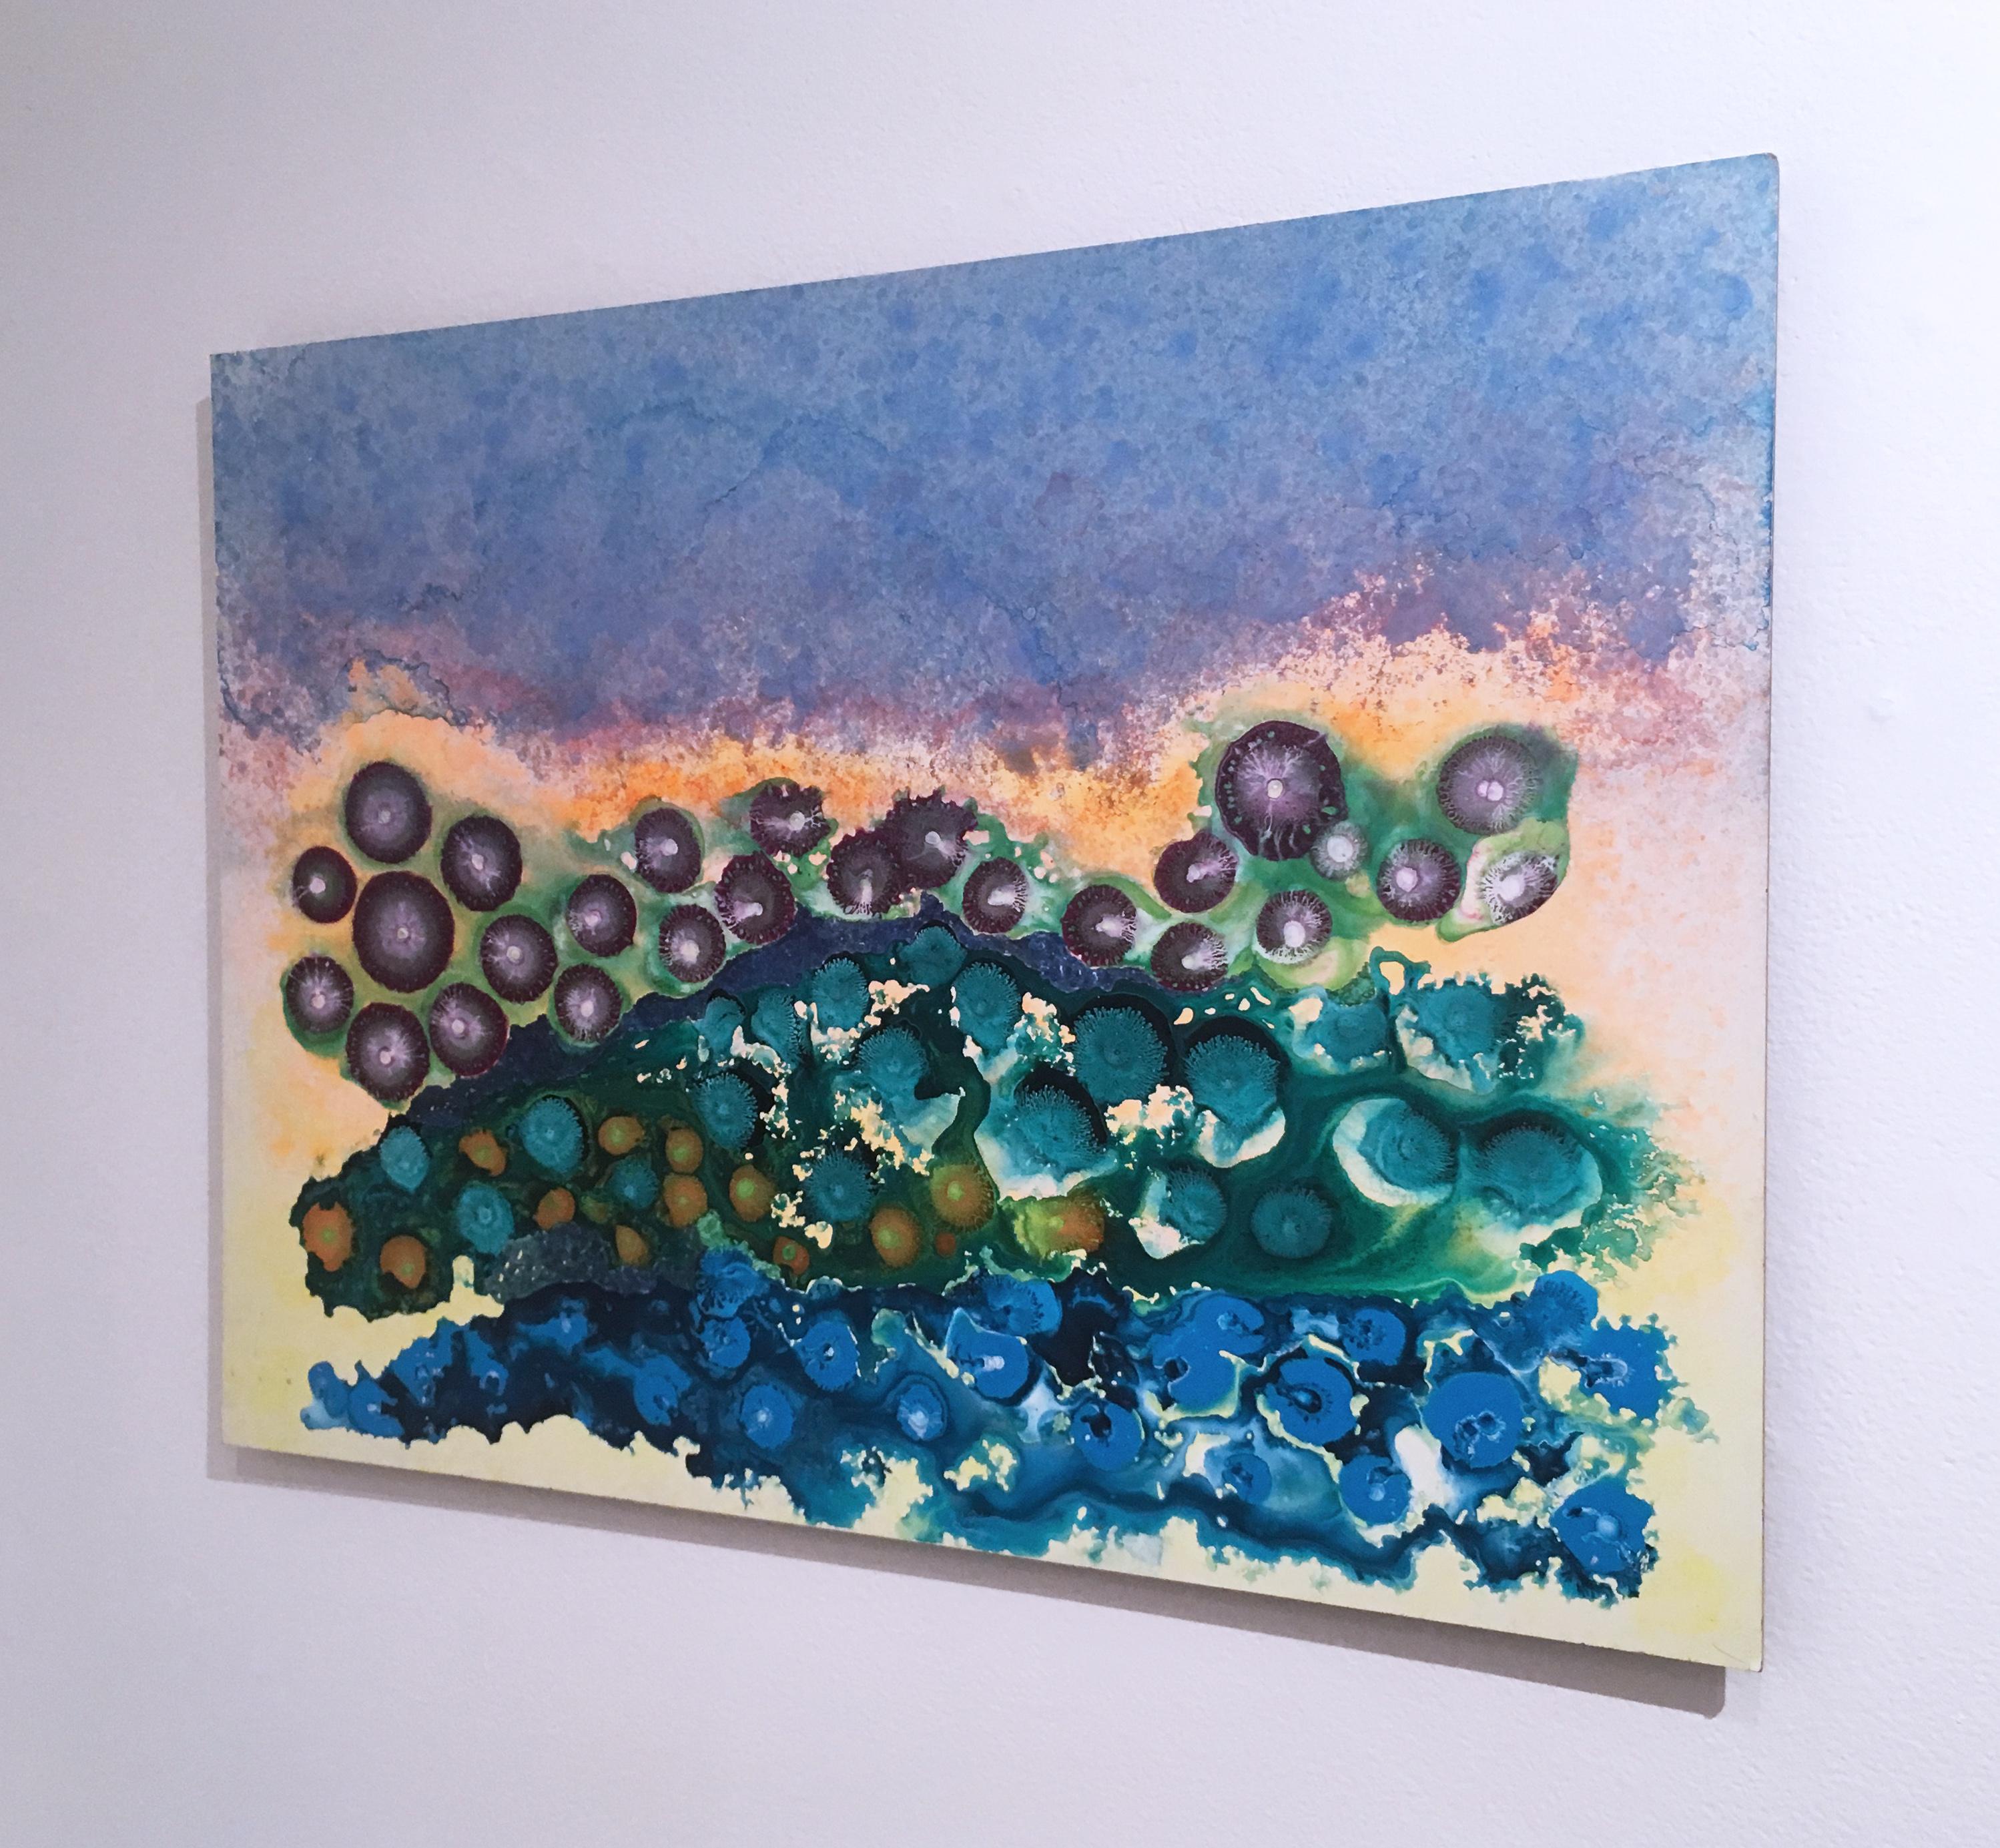 Smiling Croc, 2018, figurativ, abstrakt, floral, grün, gelb, orange, blau (Grau), Abstract Painting, von Orlando Reyes